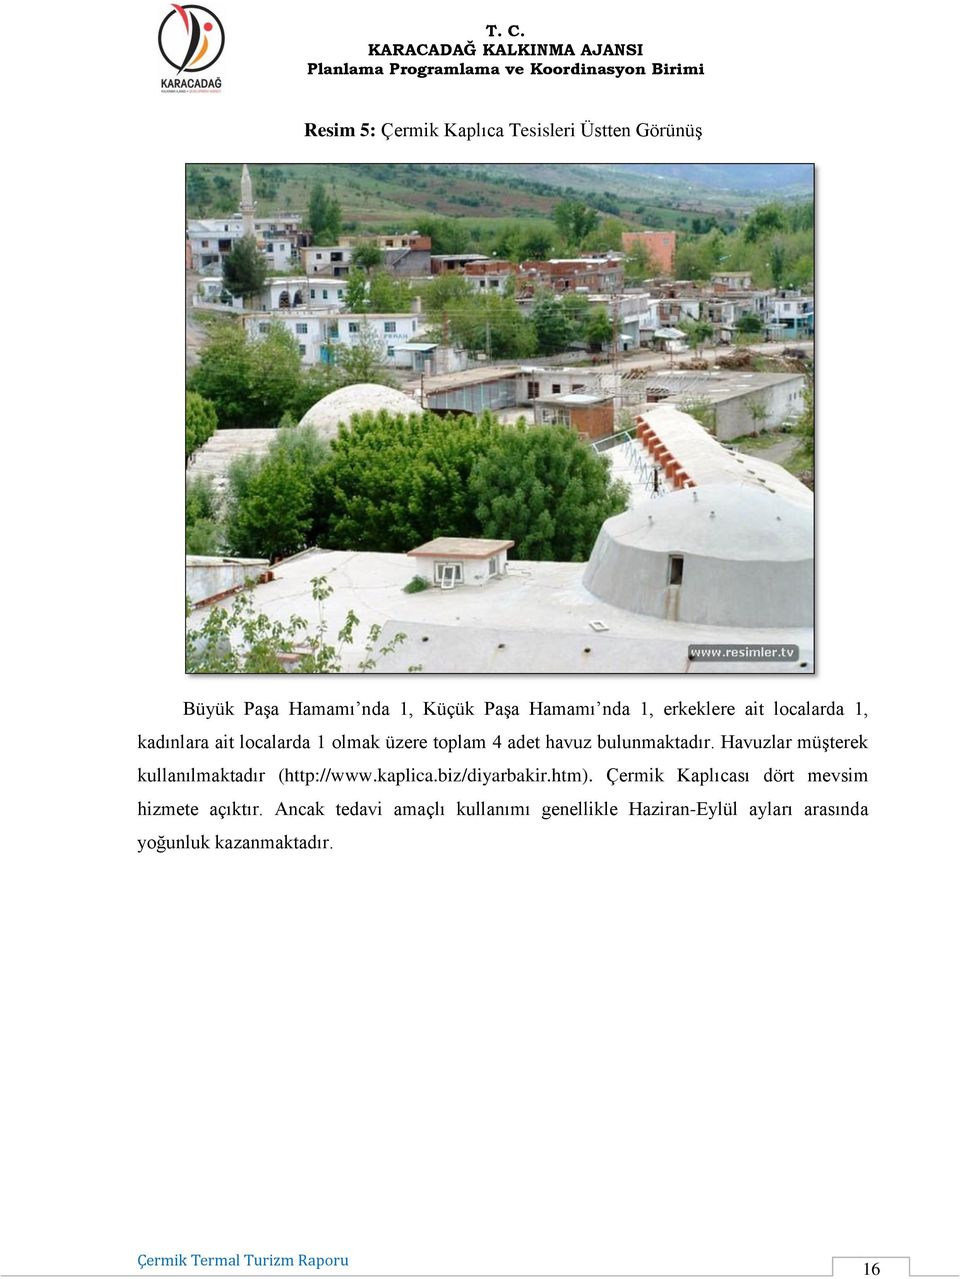 Havuzlar müşterek kullanılmaktadır (http://www.kaplica.biz/diyarbakir.htm).